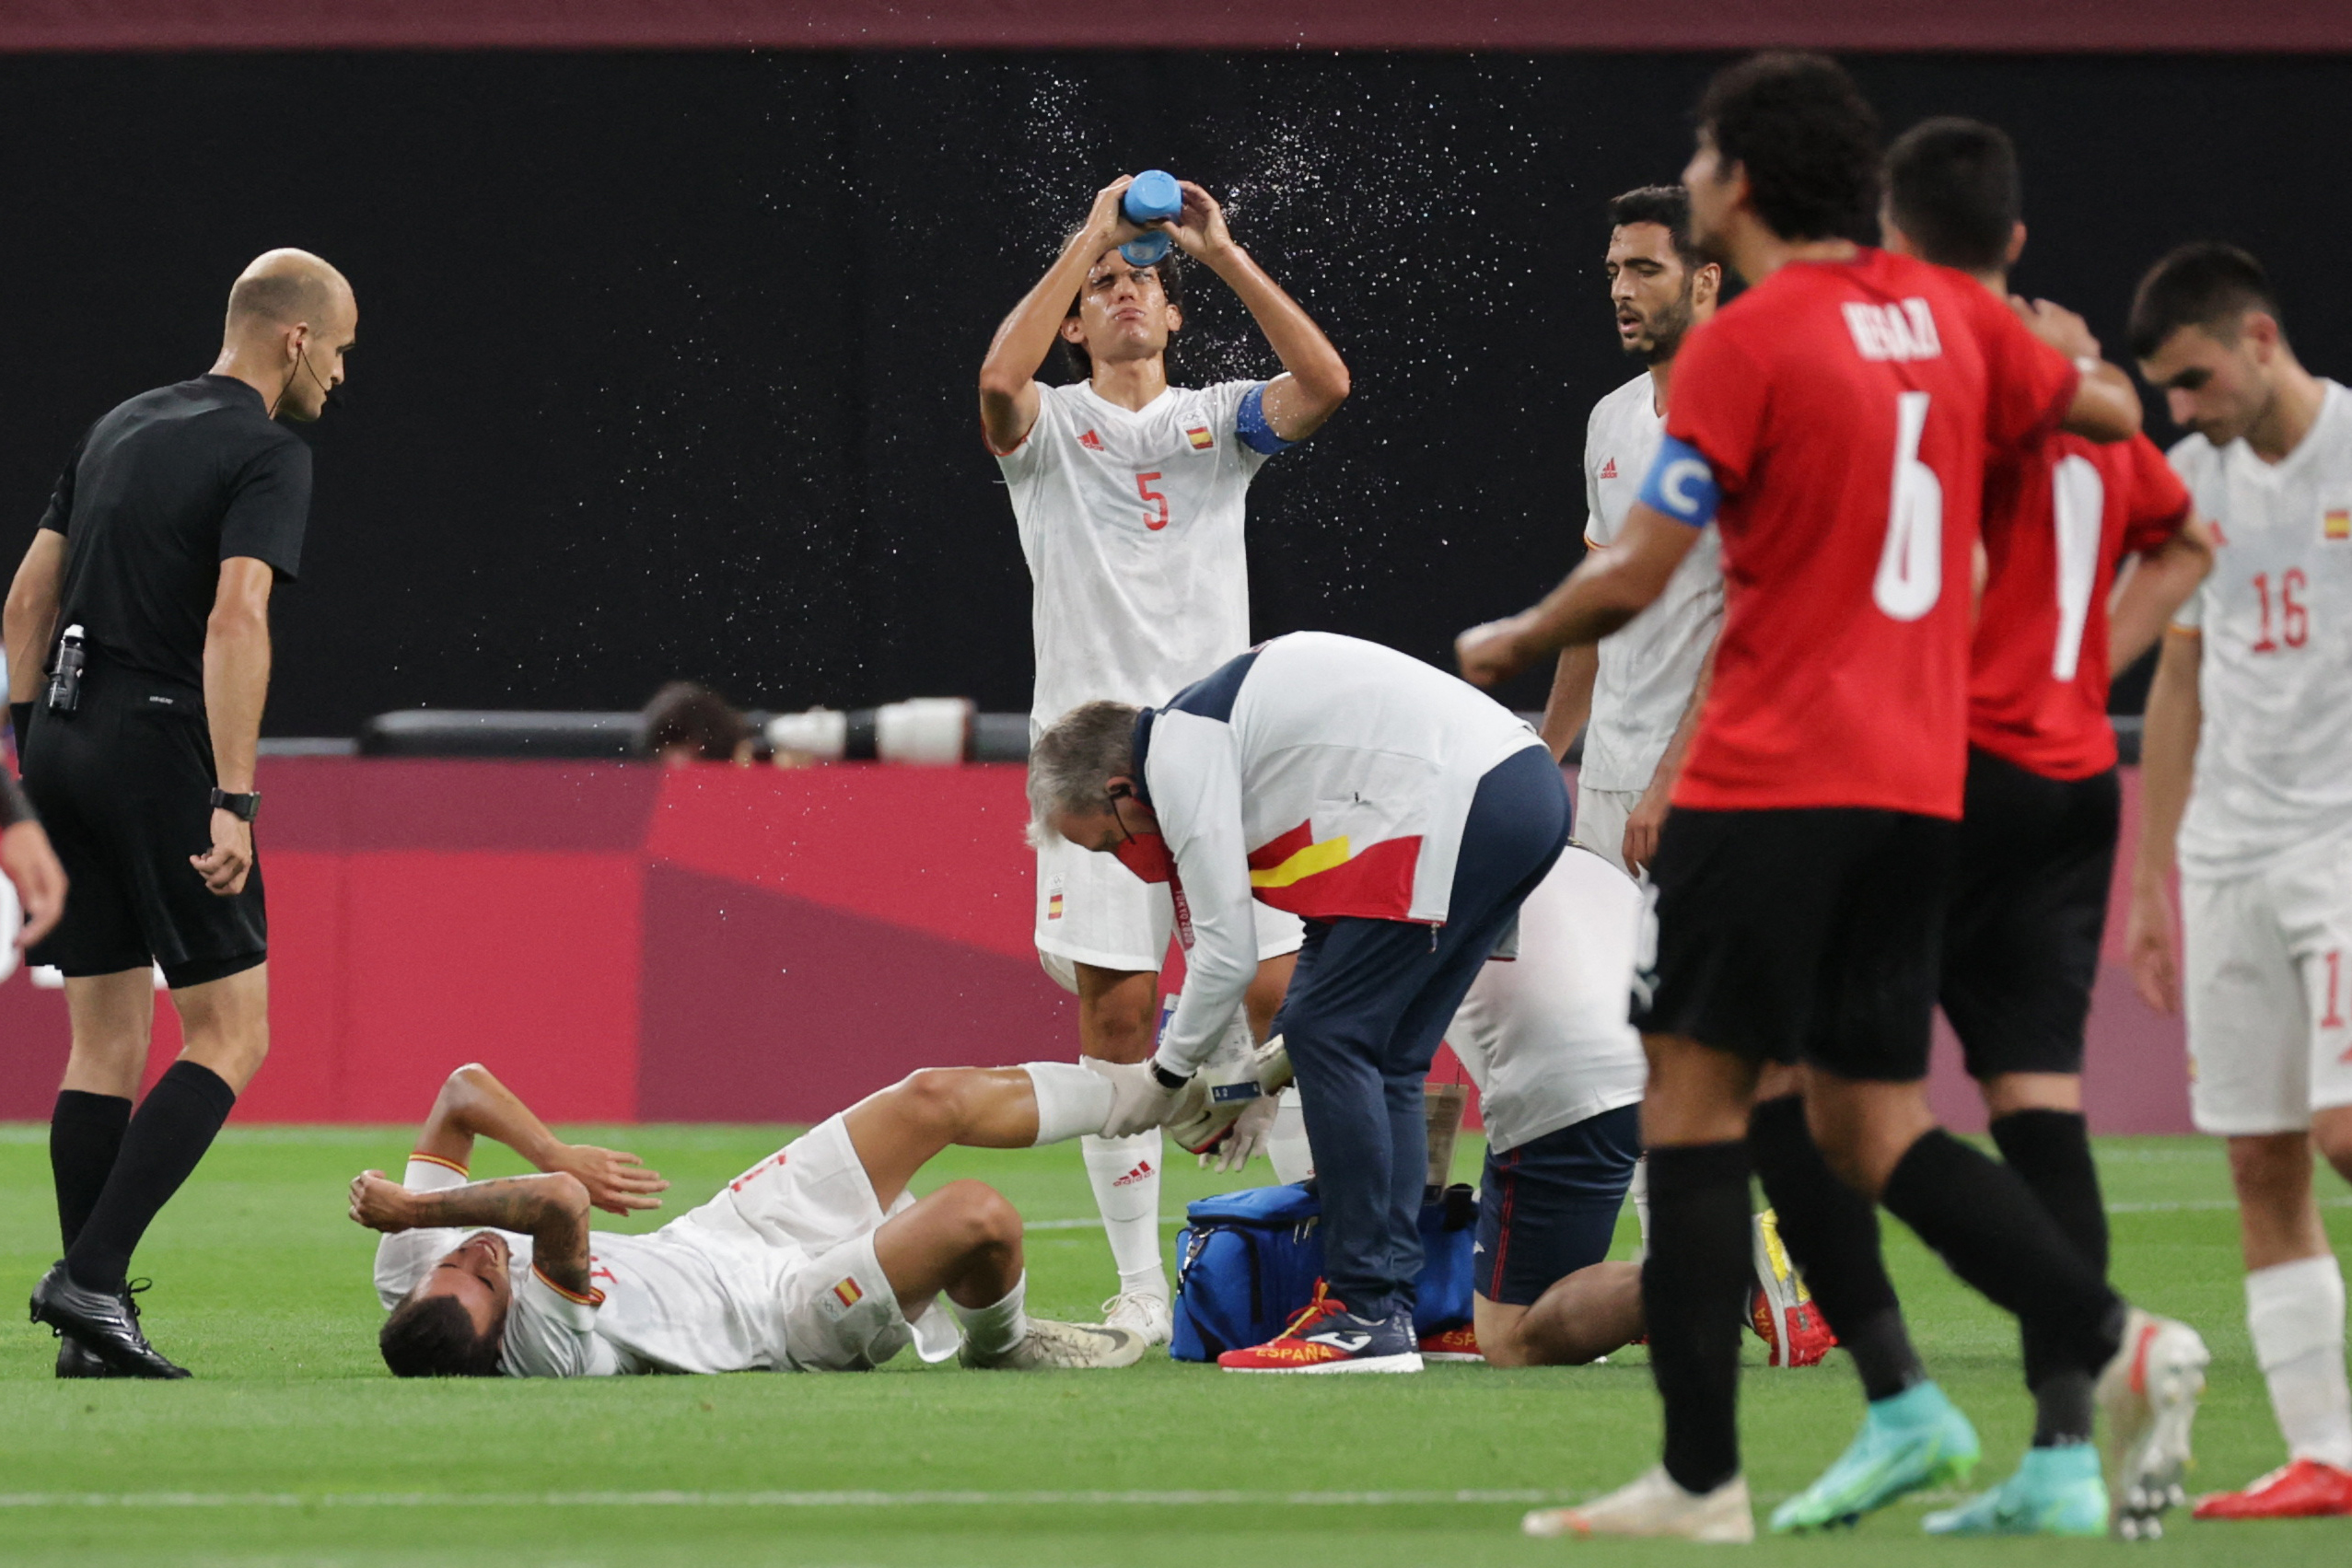 IL en el suelo) recibe atención médica tras sufrir una lesión en el juego ante Egipto. Podría quedar fuera de la competencia. Foto Prensa Libre: AFP.